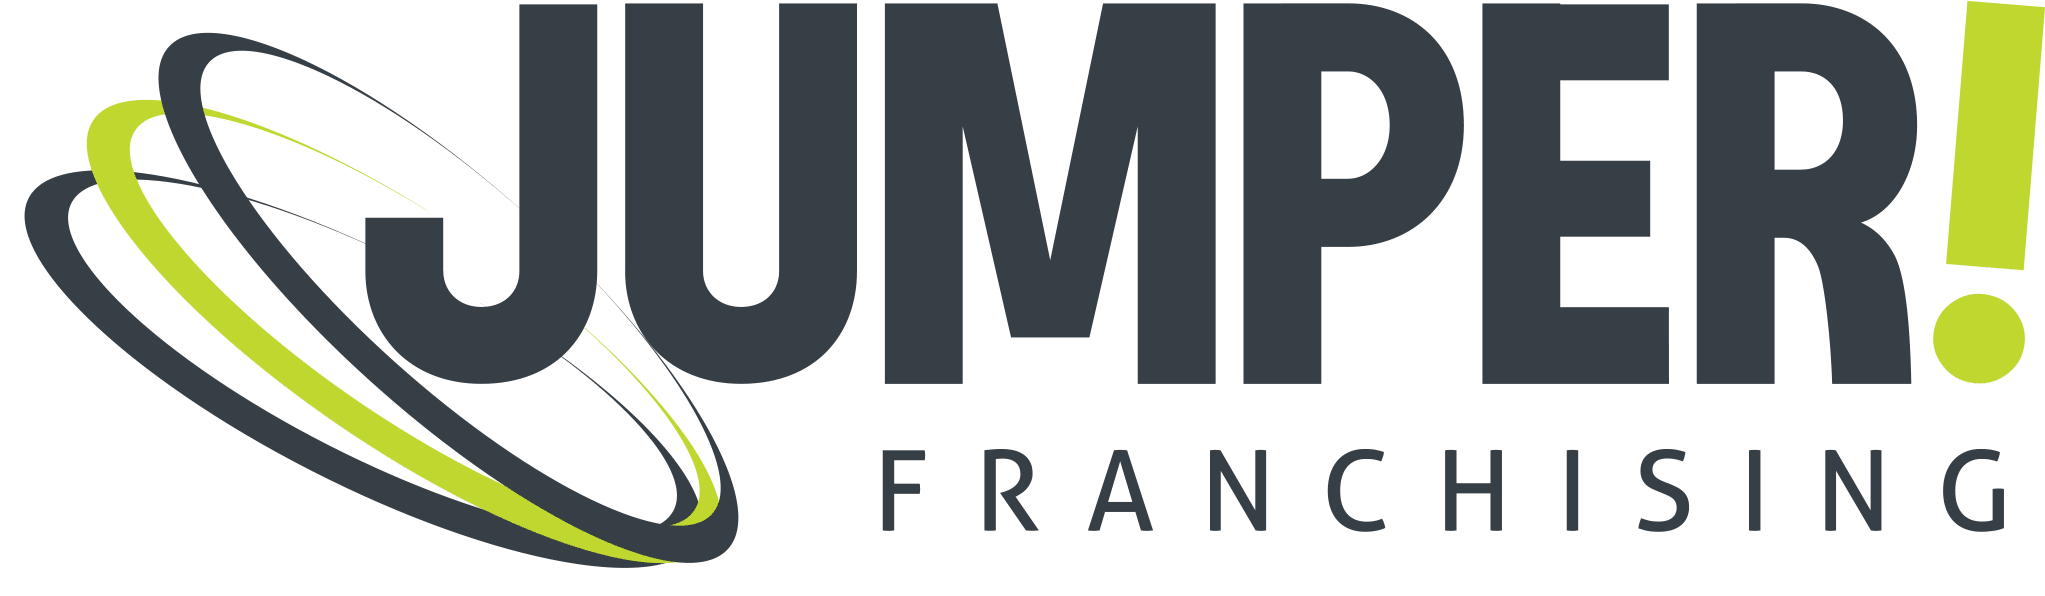 logo jumper frachising